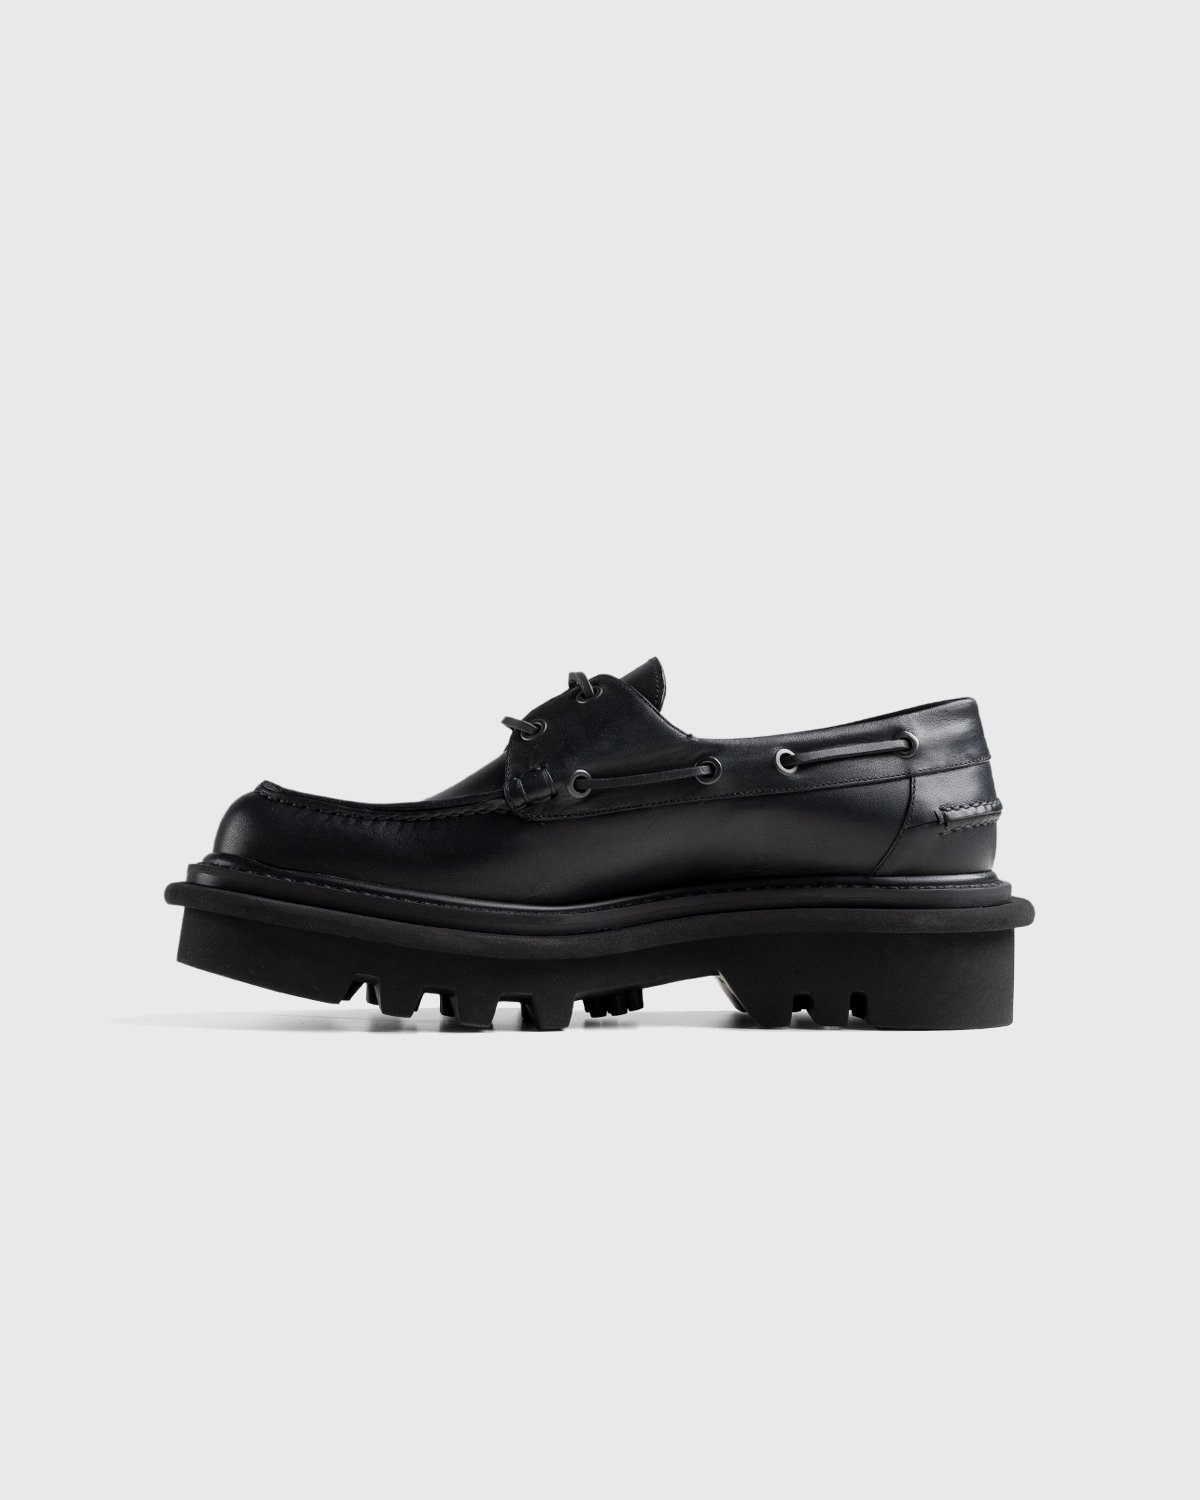 Dries van Noten - Leather Boat Shoe Black - Footwear - Black - Image 2